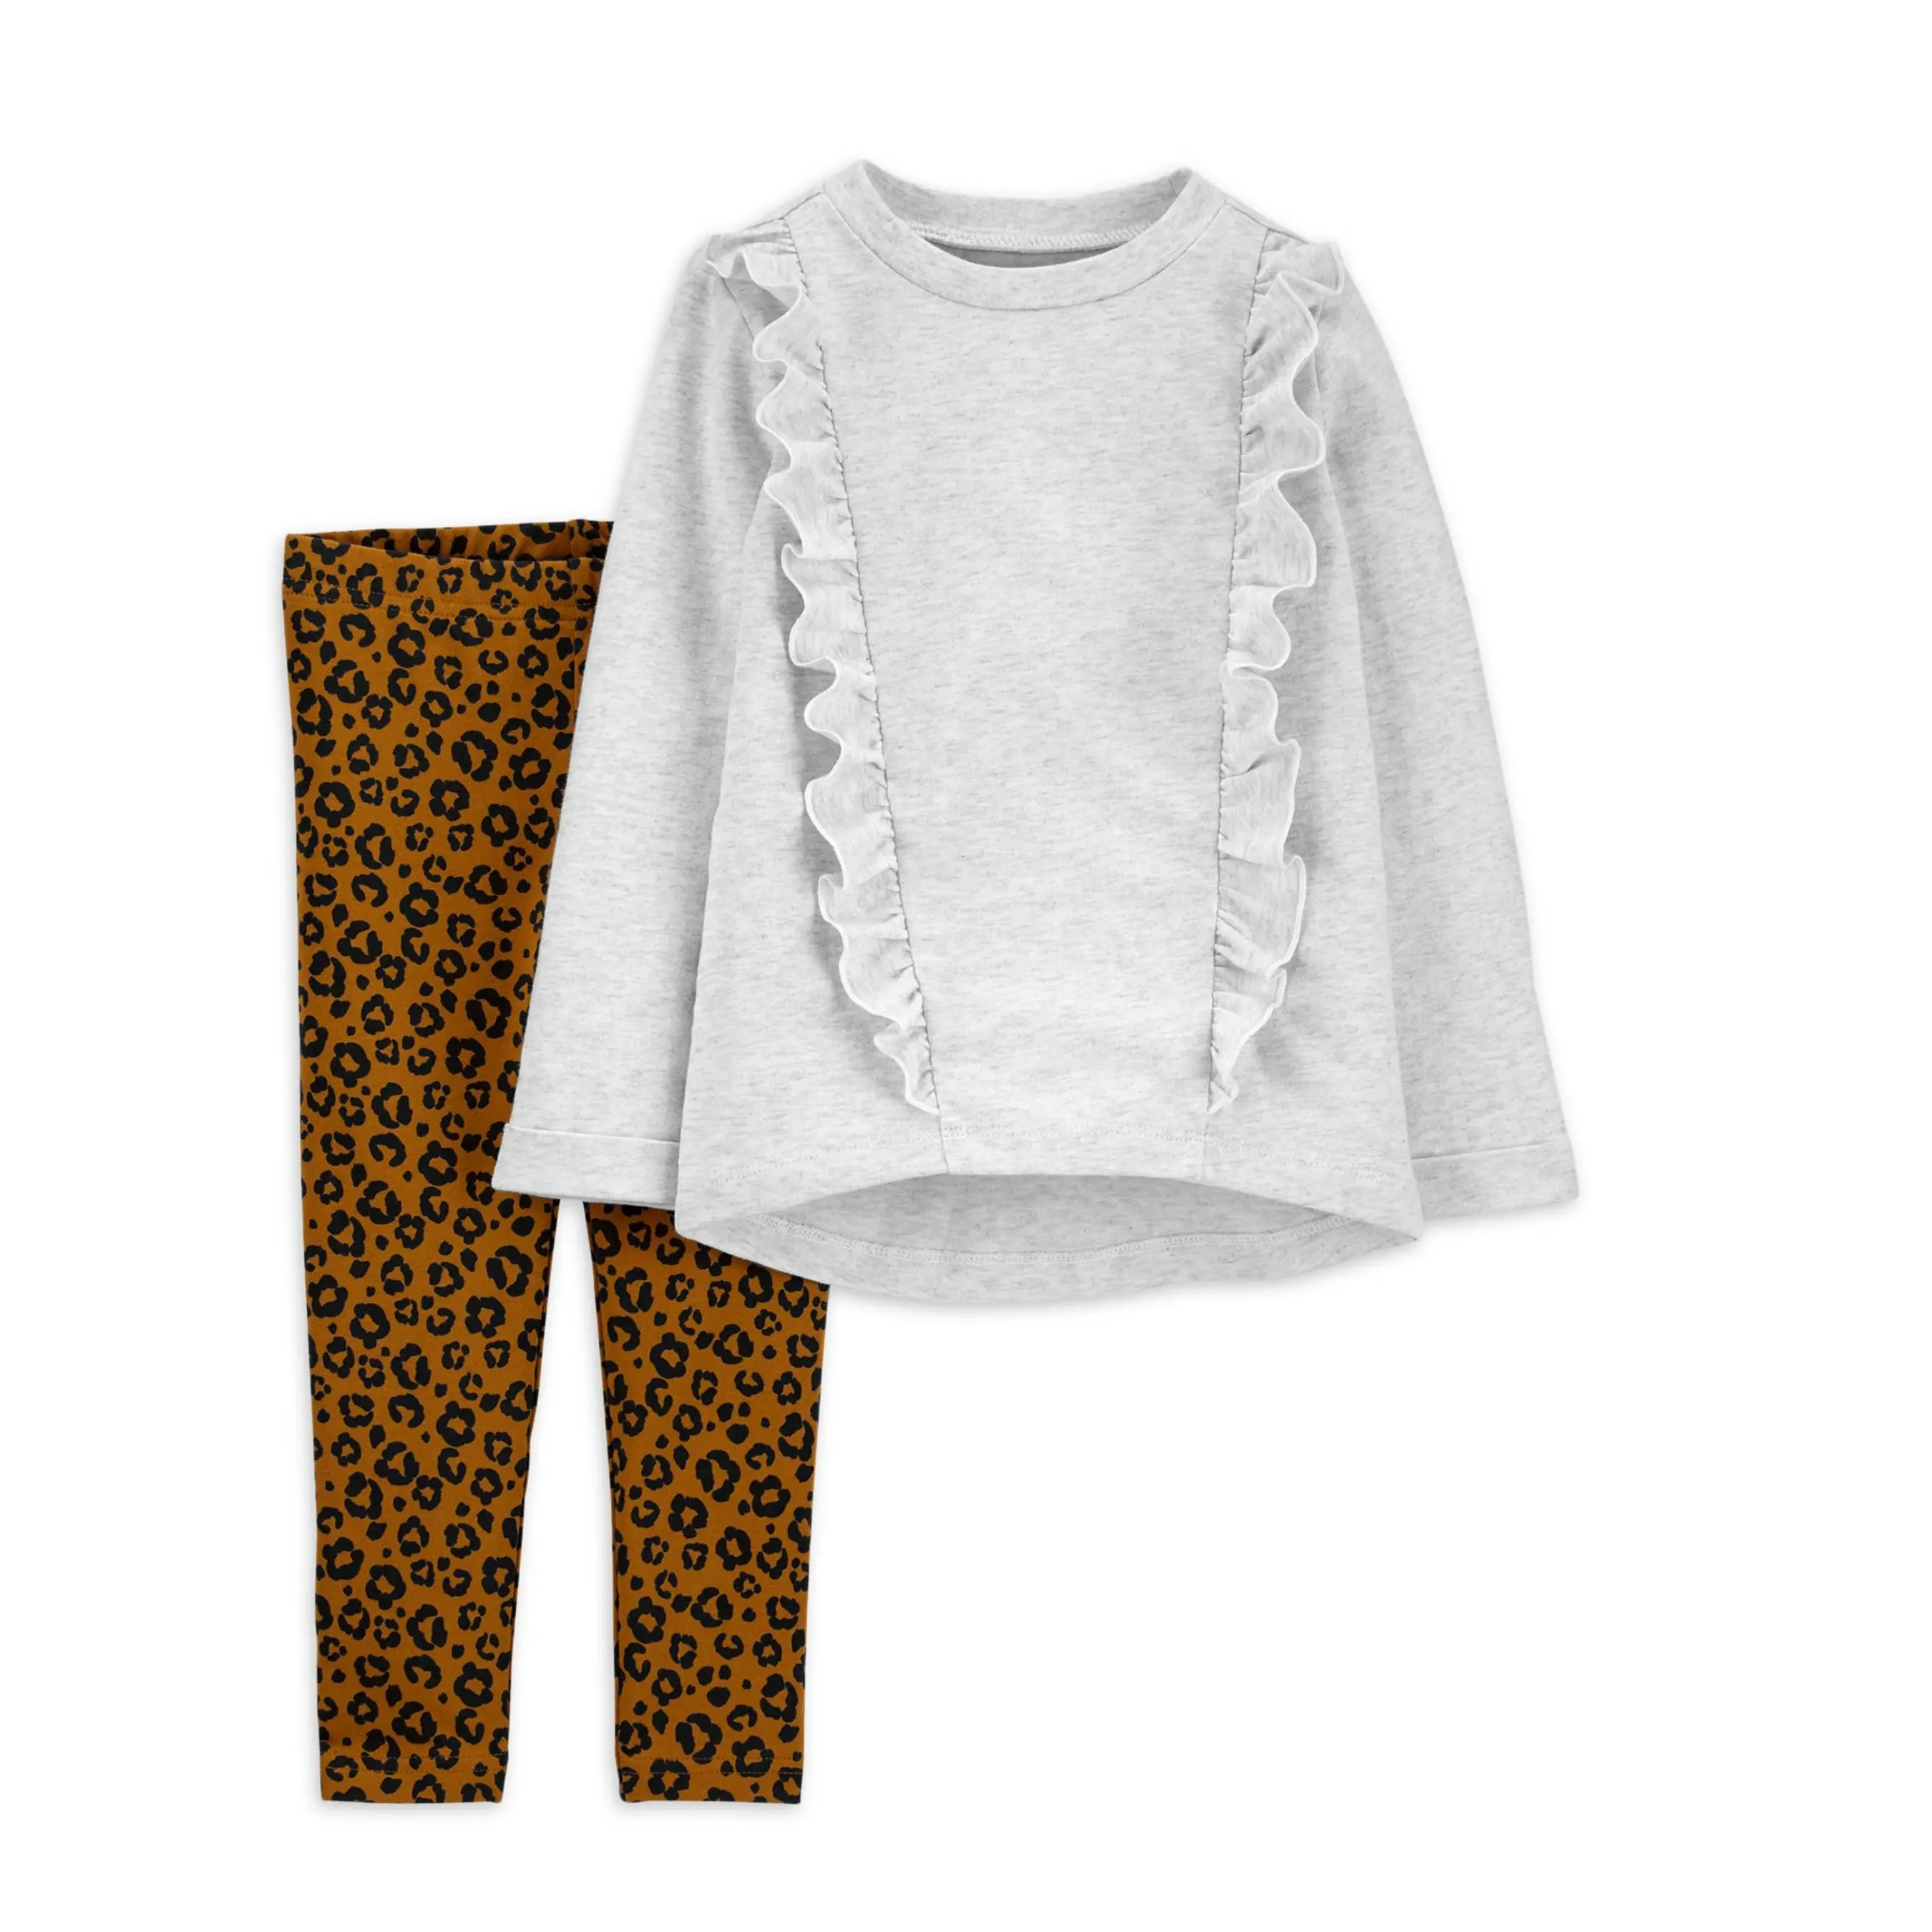 Toddler Girl top arruffato e Set di leggings con stampa leopardata i bambini indossano abiti casual per bambini set di abbigliamento western wear dresses 2-12 y